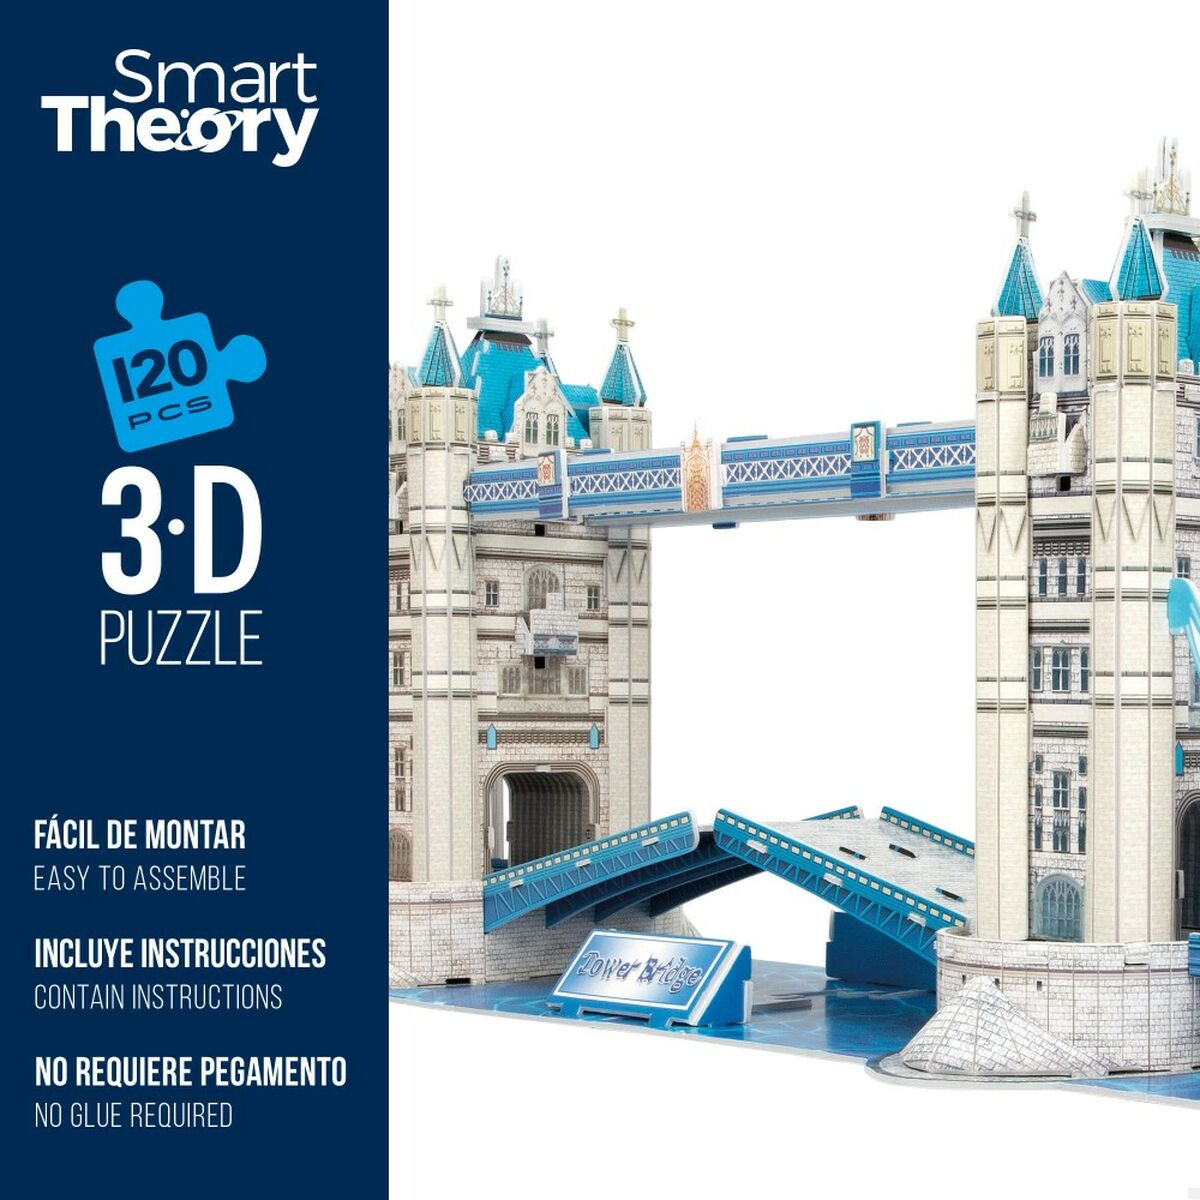 3D-pussel Colorbaby Tower Bridge 120 Delar 77,5 x 23 x 18 cm (6 antal)-Leksaker och spel, Pussel och hjärngrupper-Colorbaby-peaceofhome.se